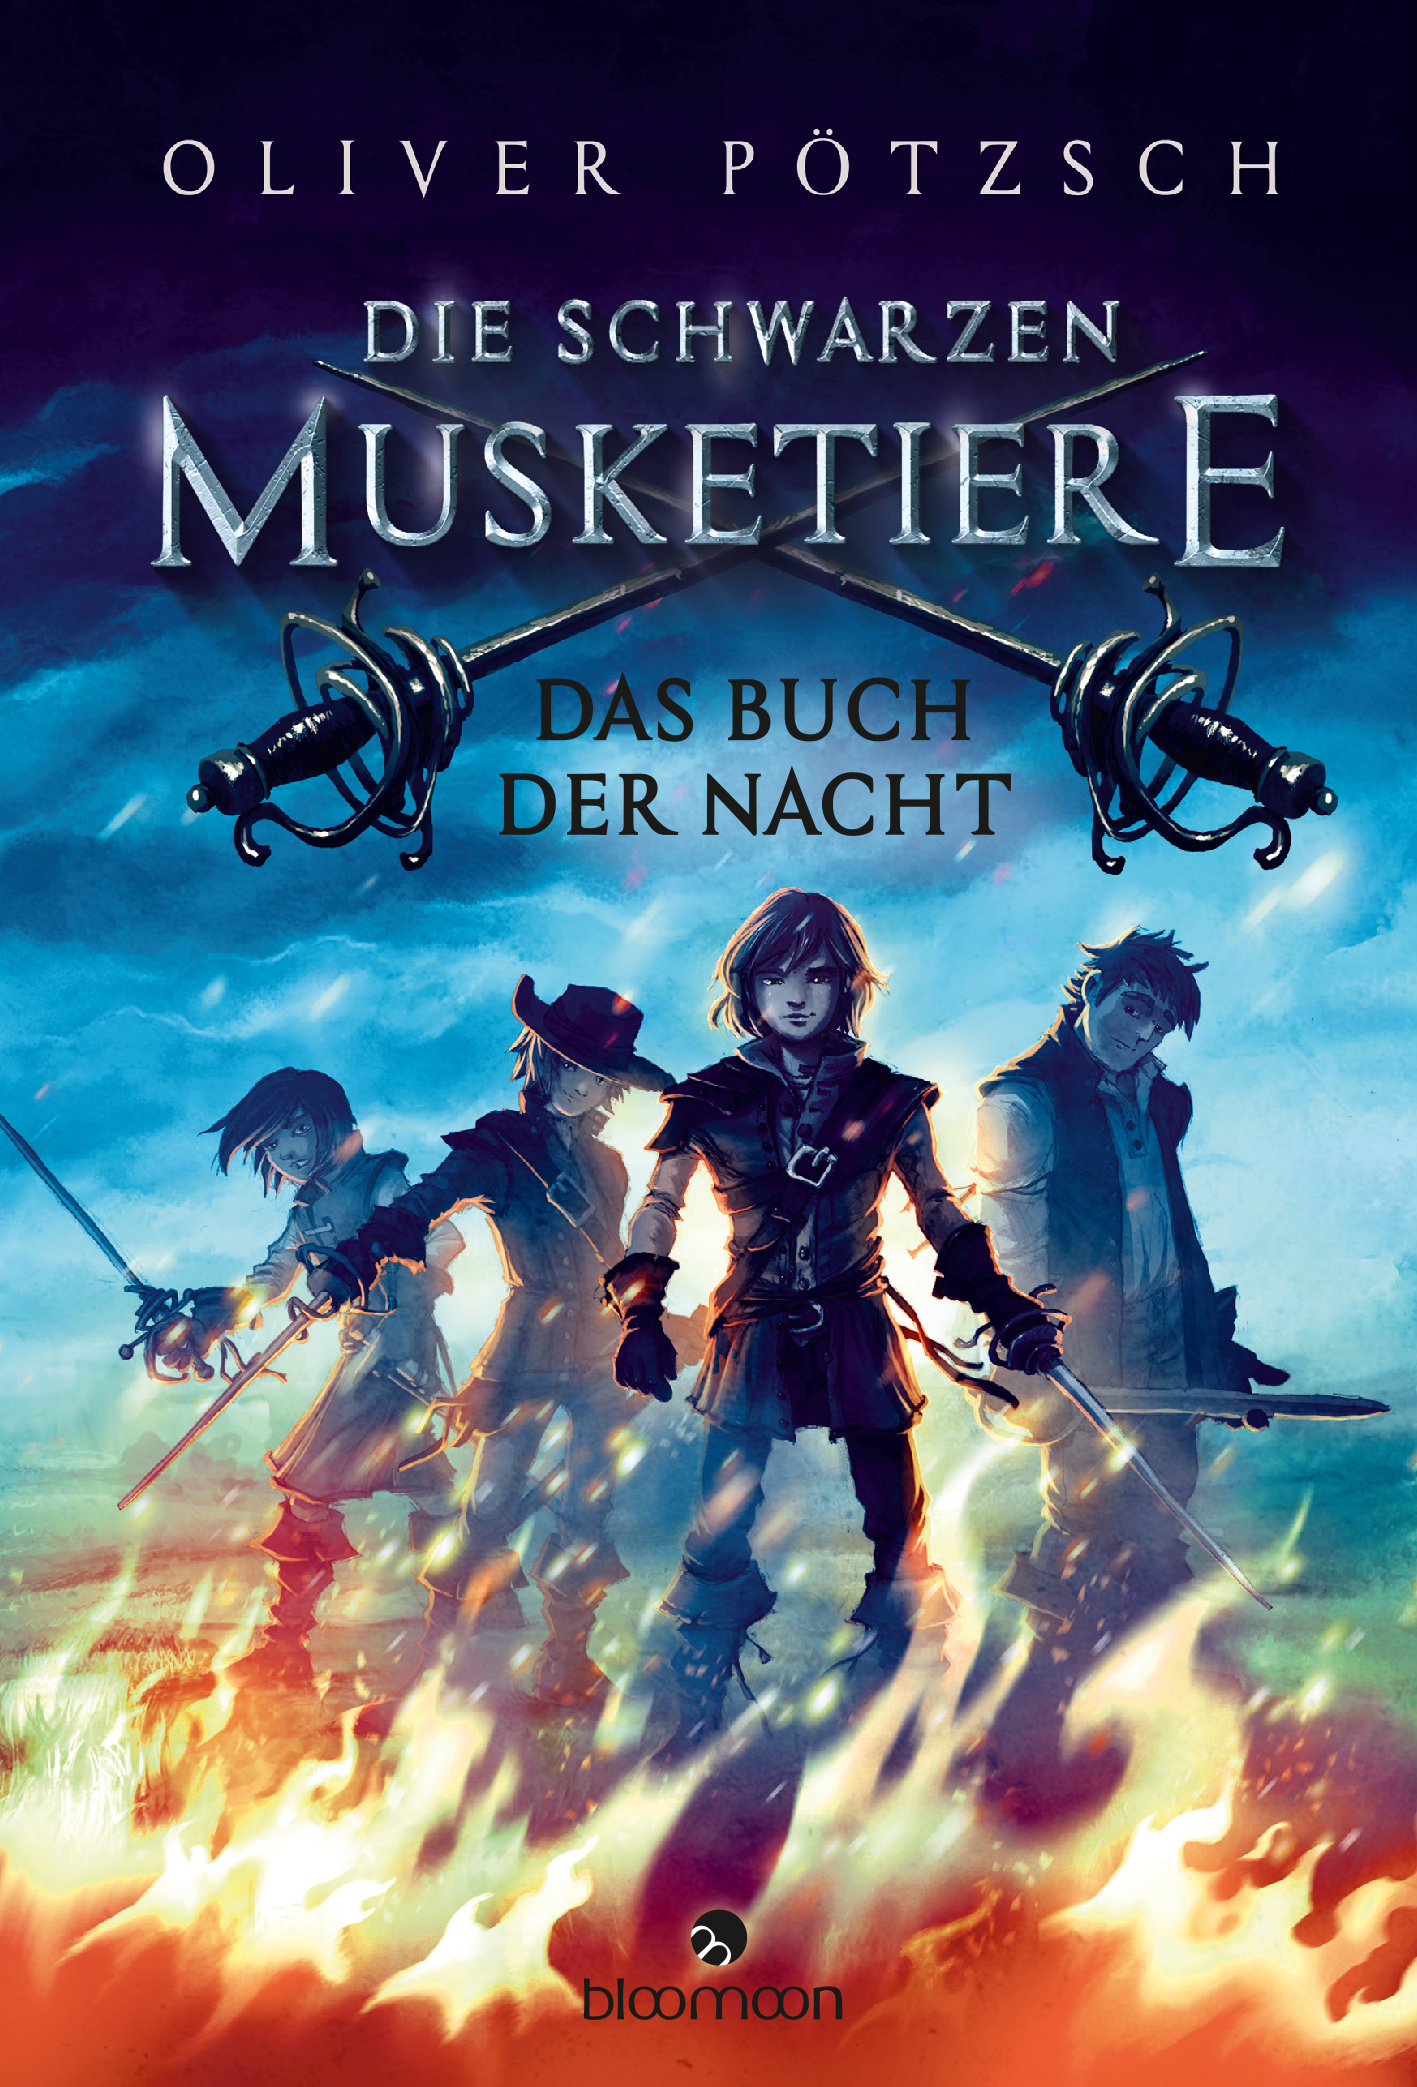 Oliver Pötzschs Jugendbuch „Die Schwarzen Musketiere – Das Buch der Nacht“ wird mit dem Leipziger Lesekompass ausgezeichnet